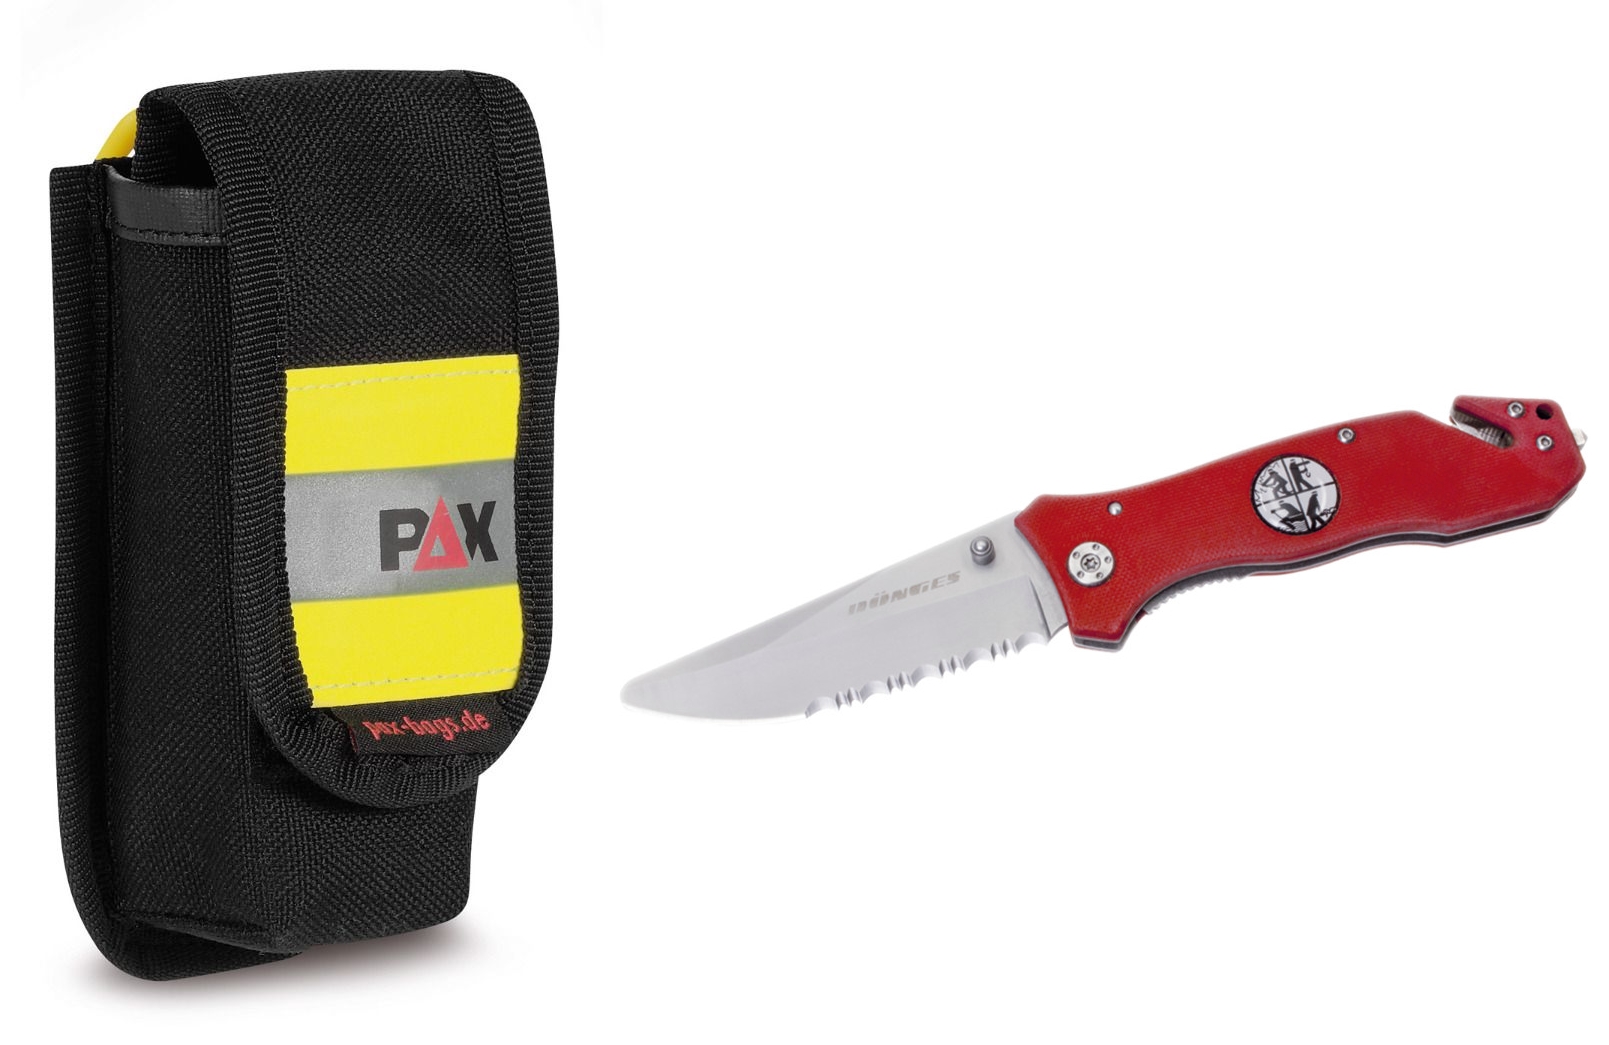 FIREPAX-SET FEUERWEHRMESSER - Rettungsmesser-Sets - Helpi-Shop - Der  Feuerwehrshop